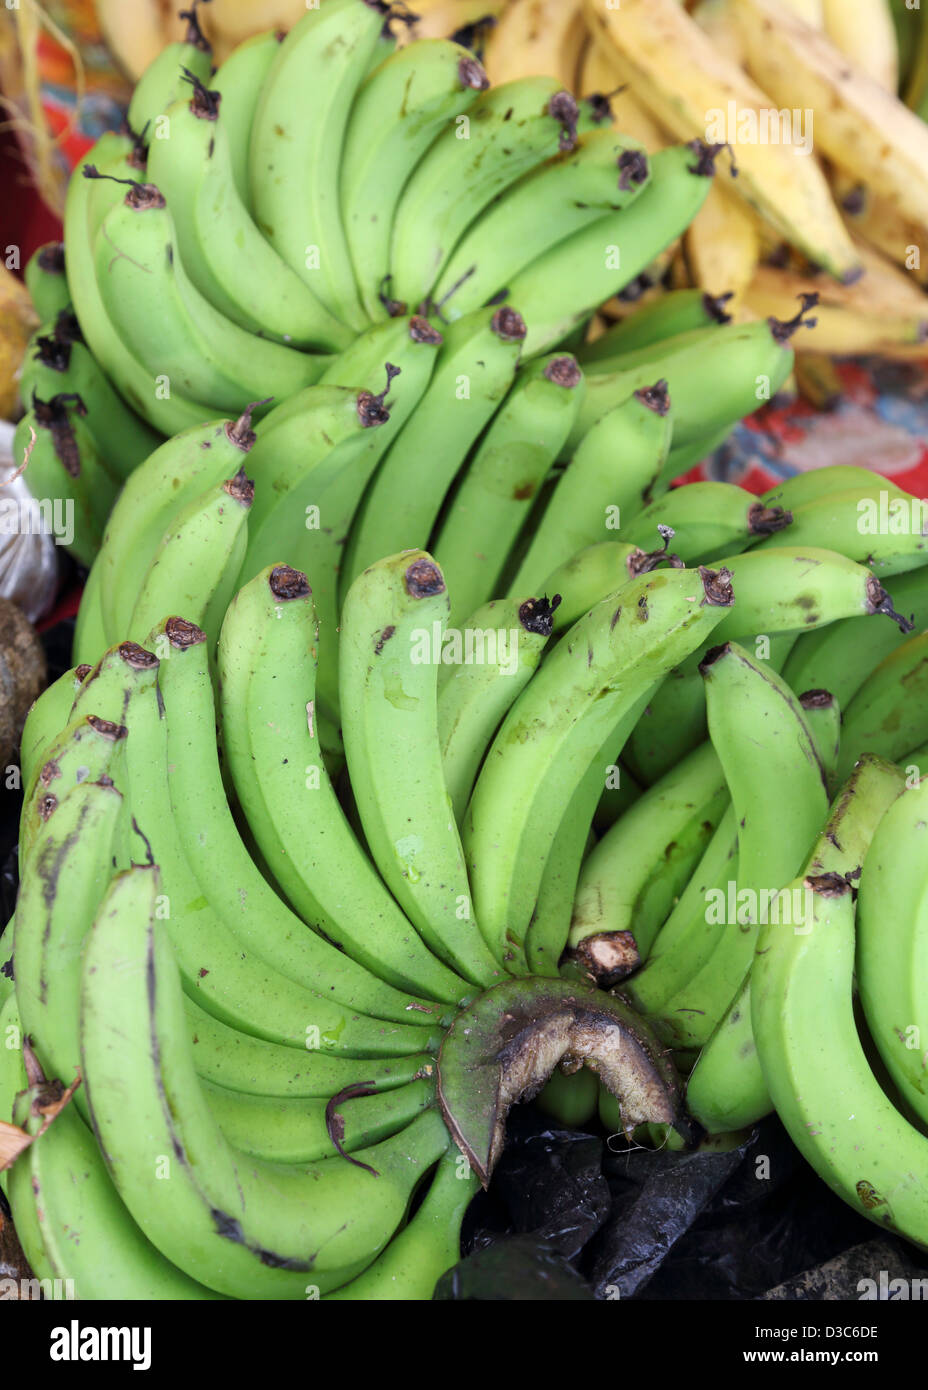 Banane verdi,Caraibi stallo del mercato,DOMINICA Foto Stock